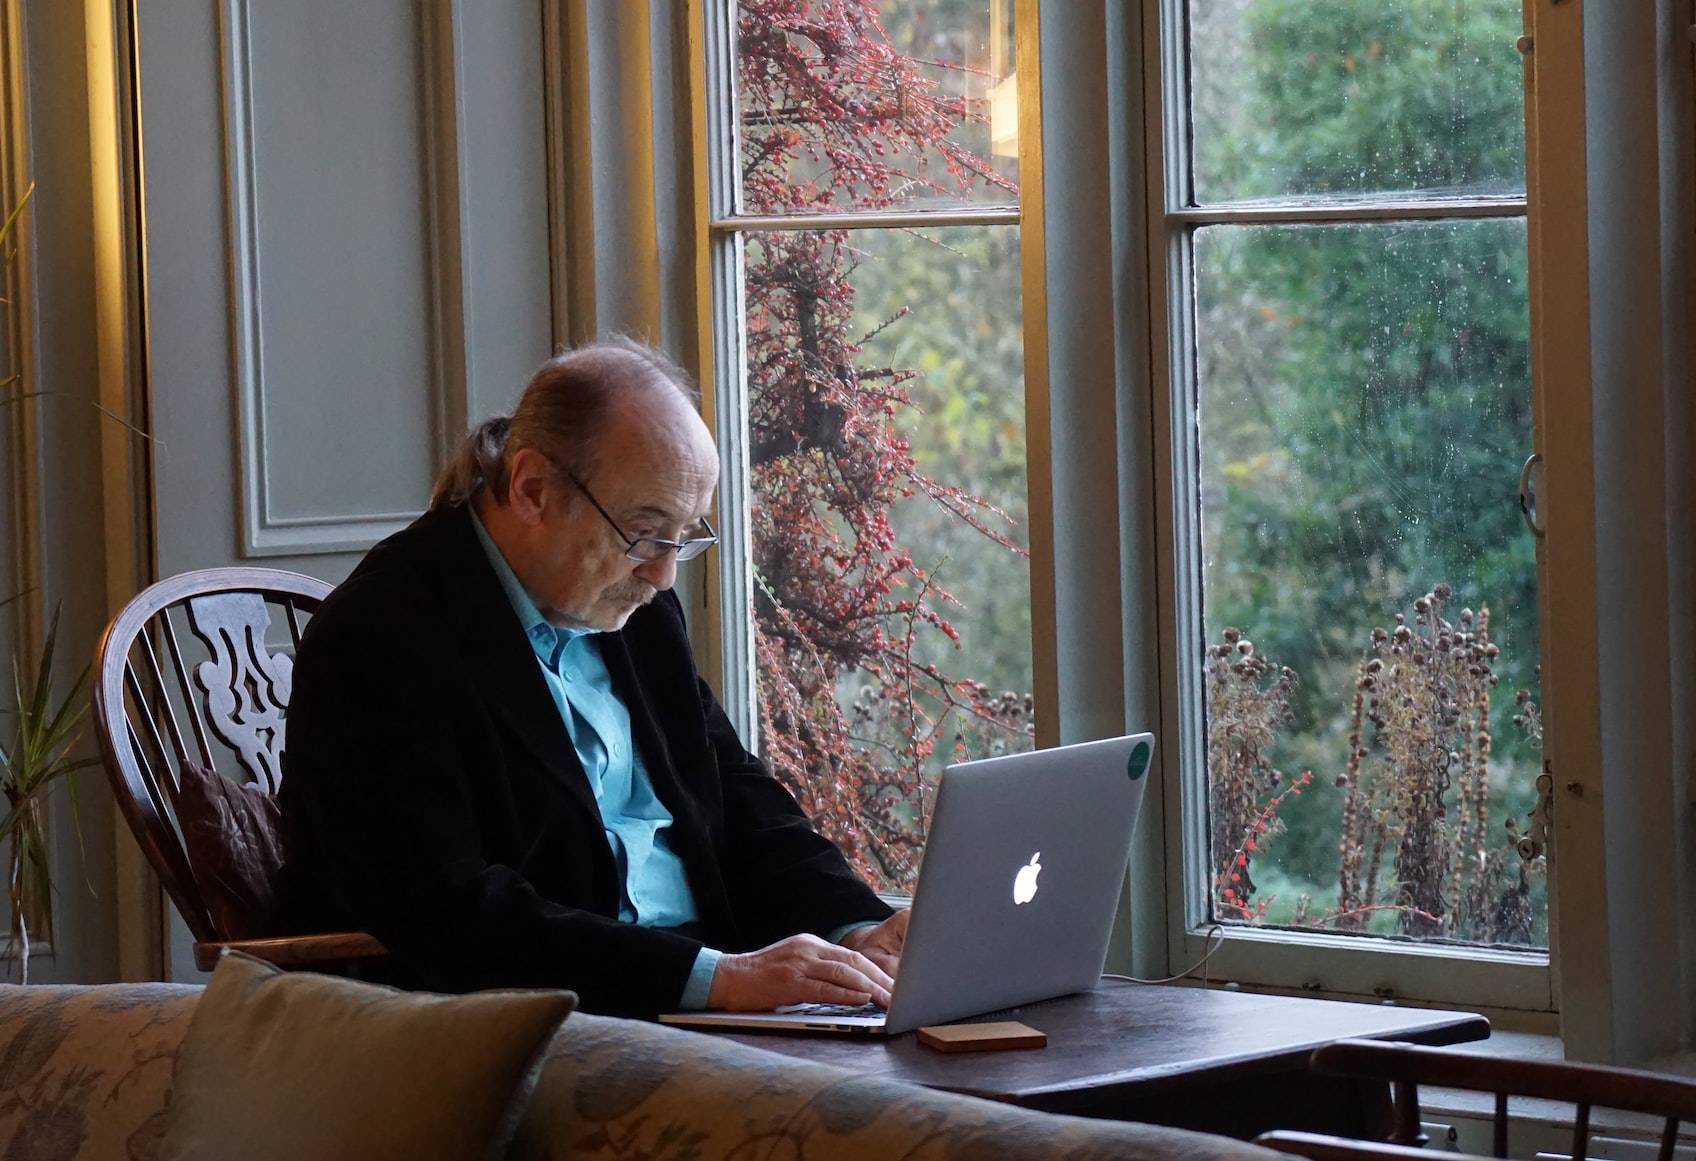 Senior man playing computer games on an Apple laptop.